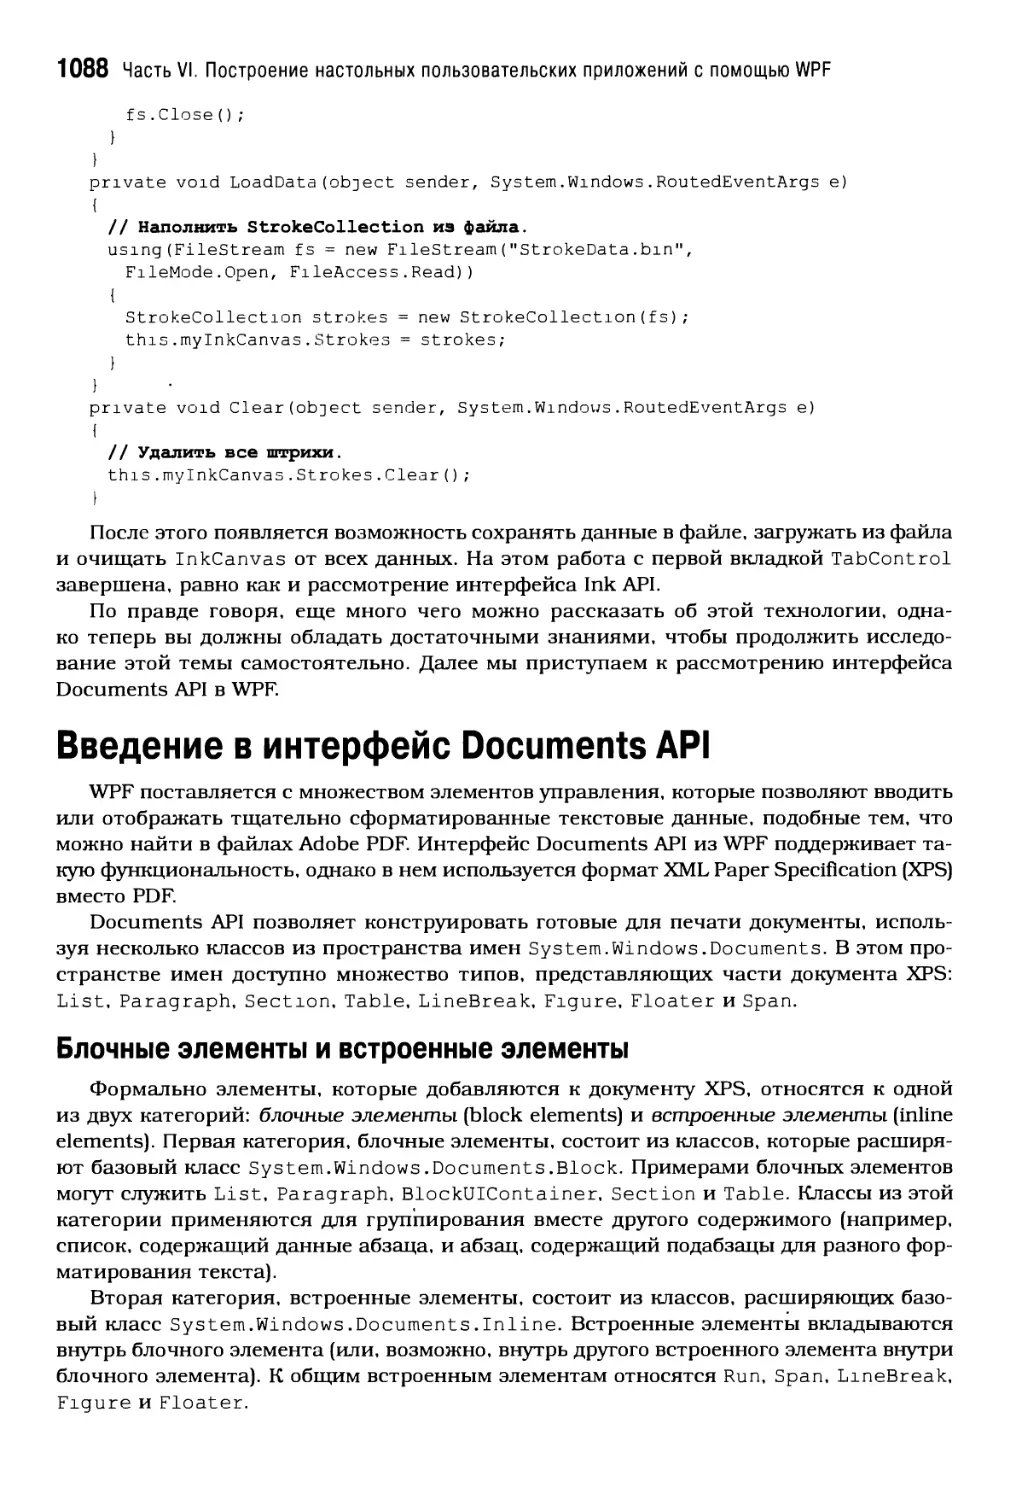 Введение в интерфейс Documents API